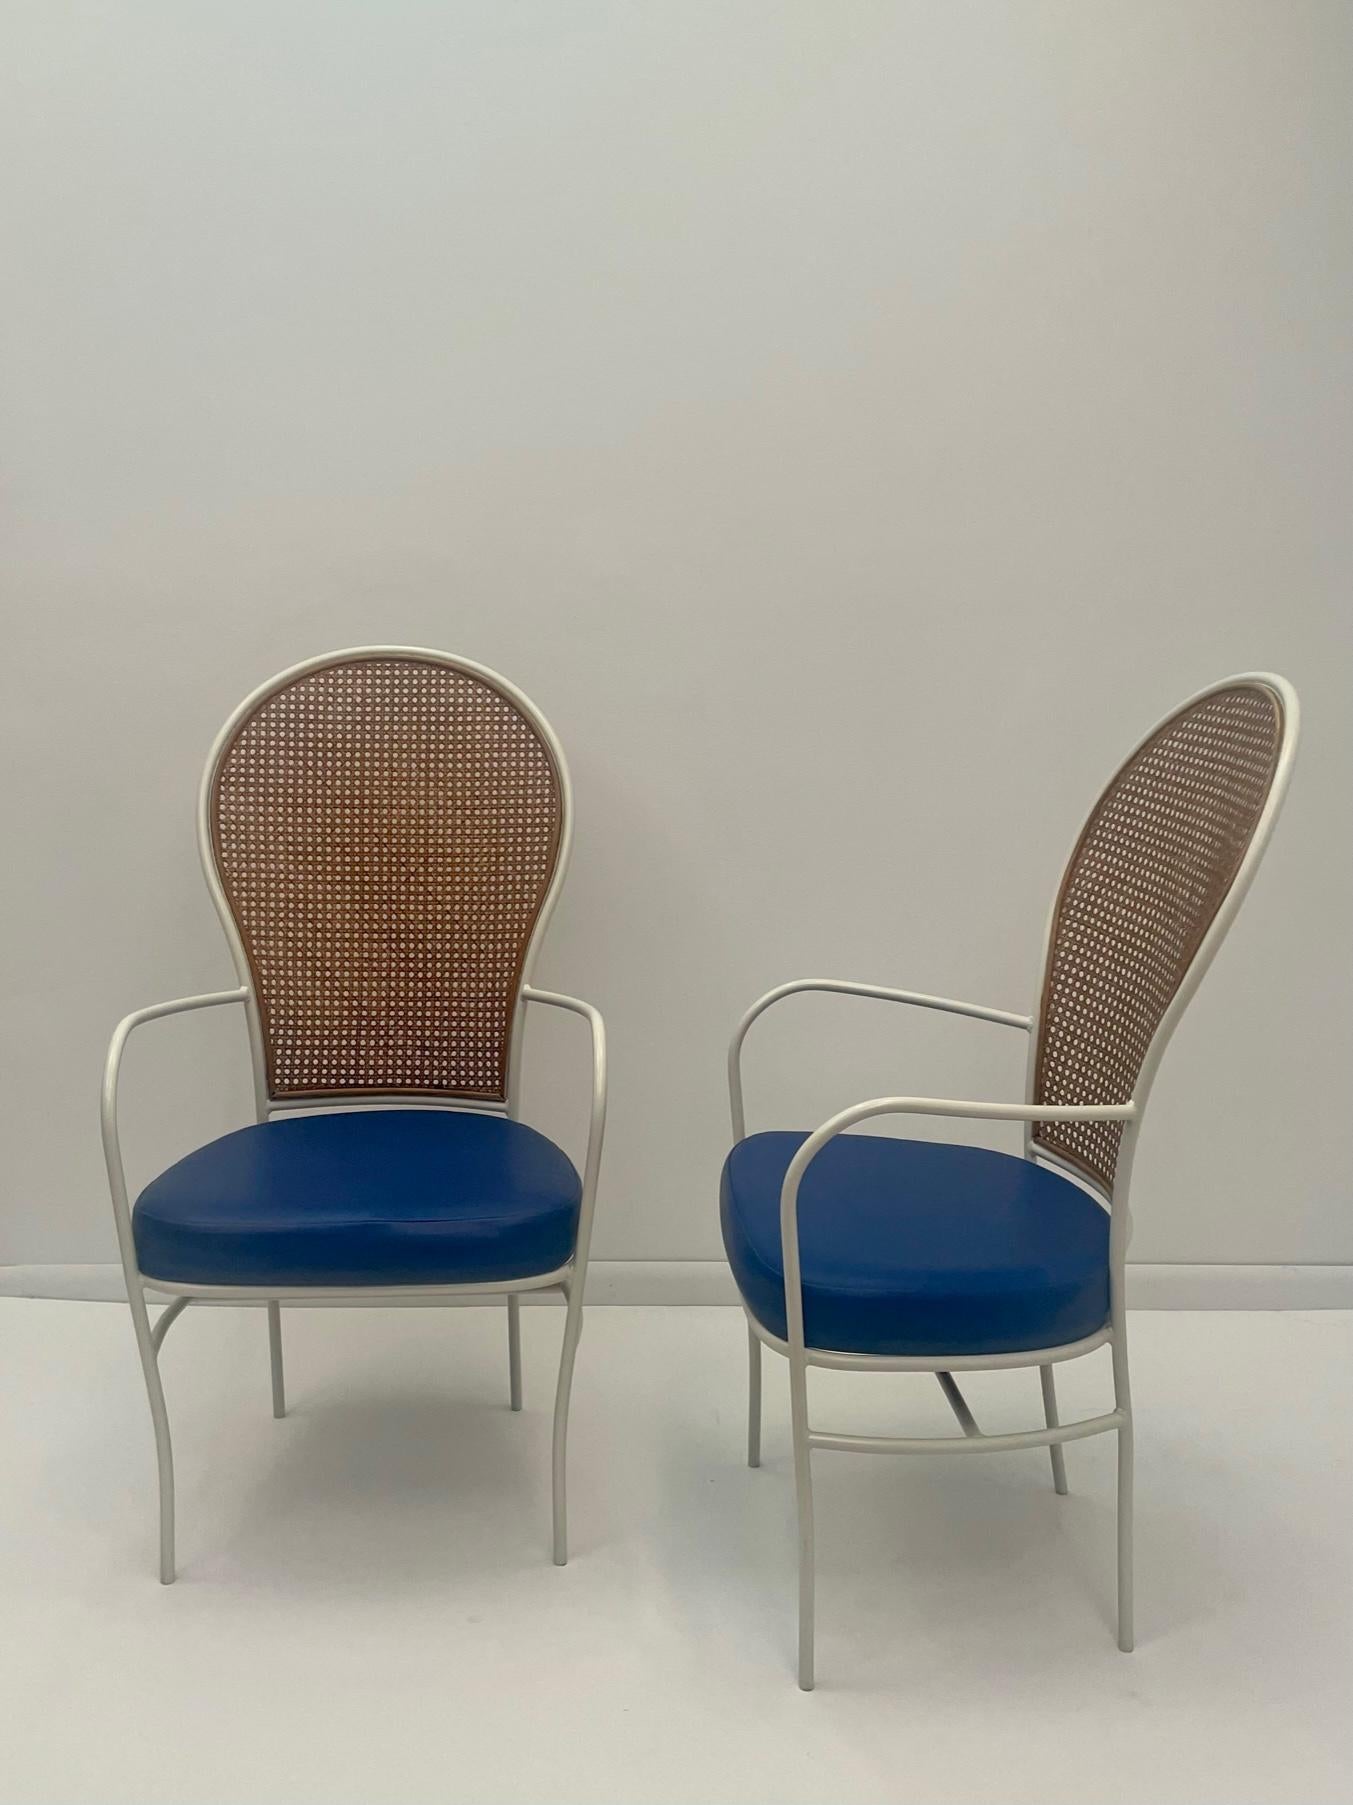 Paire de fauteuils Milo Baughman, de style moderne du milieu du siècle, avec une structure en fer peint en blanc, de beaux dossiers cannelés et des sièges originaux en vinyle bleu. Les bras sont fins et élégants, tout comme les jambes. 
Hauteur des